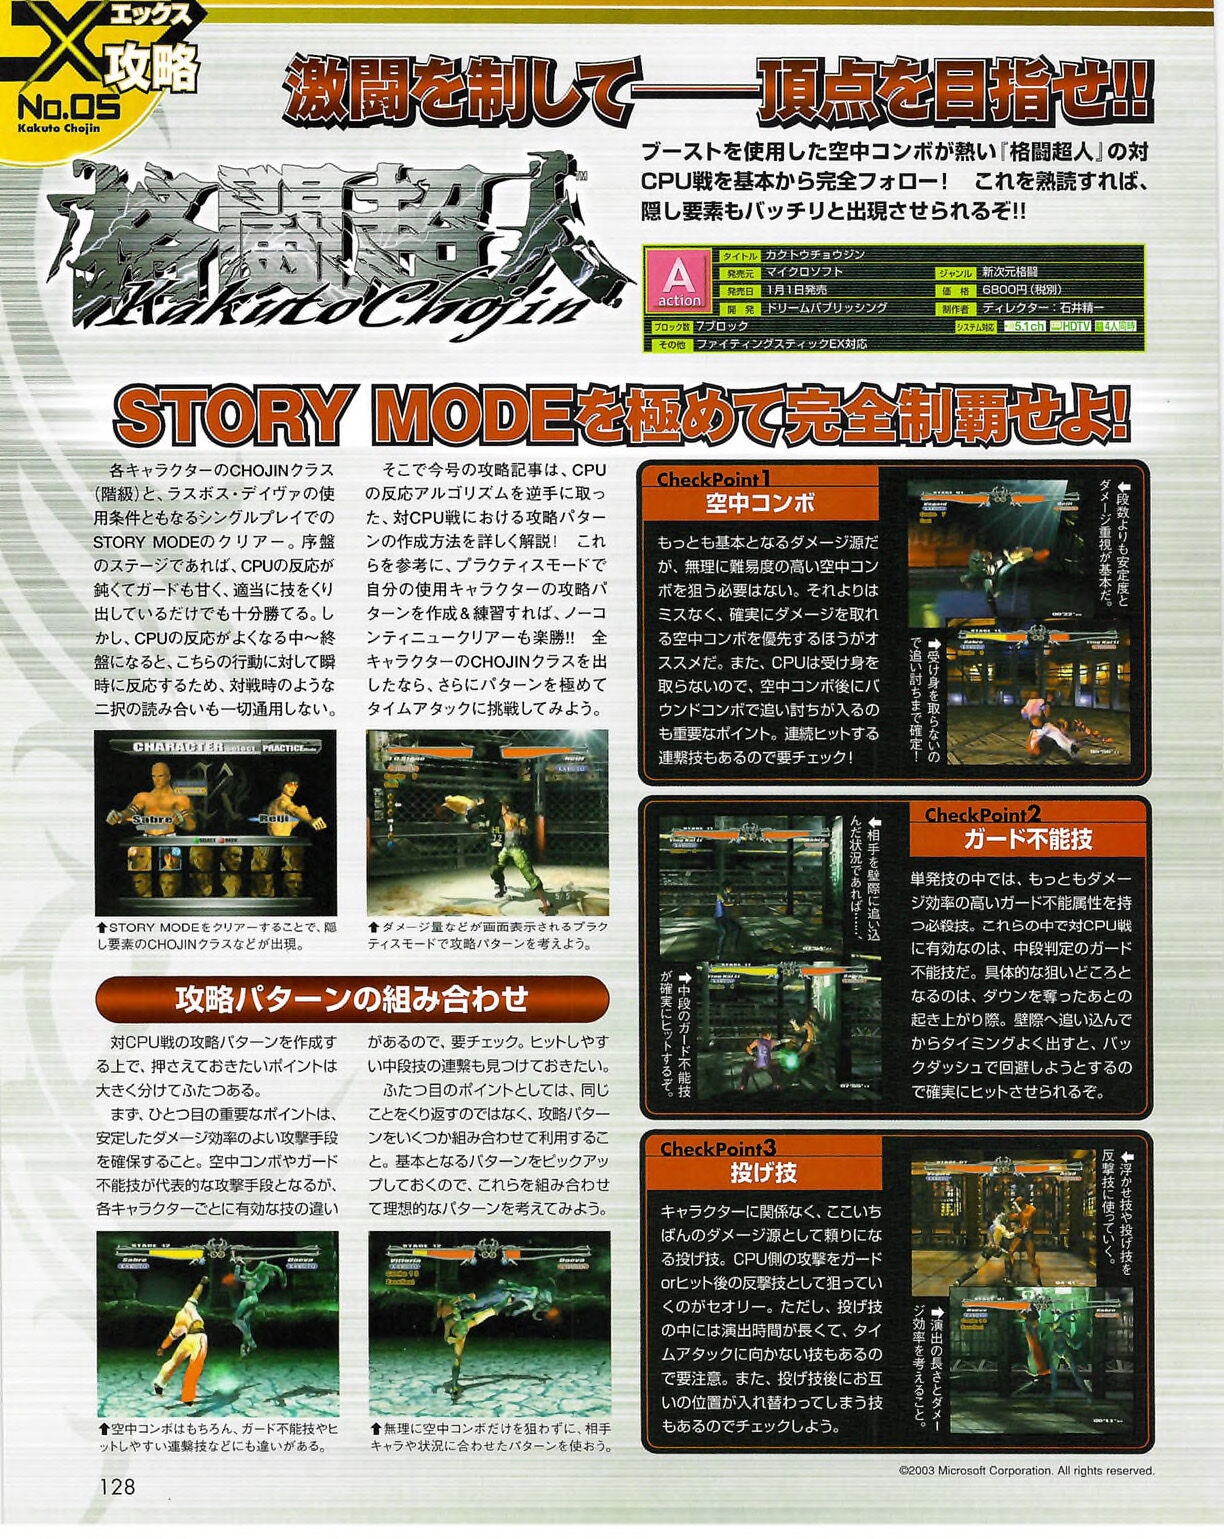 Famitsu_Xbox_2003-04_jp2 127